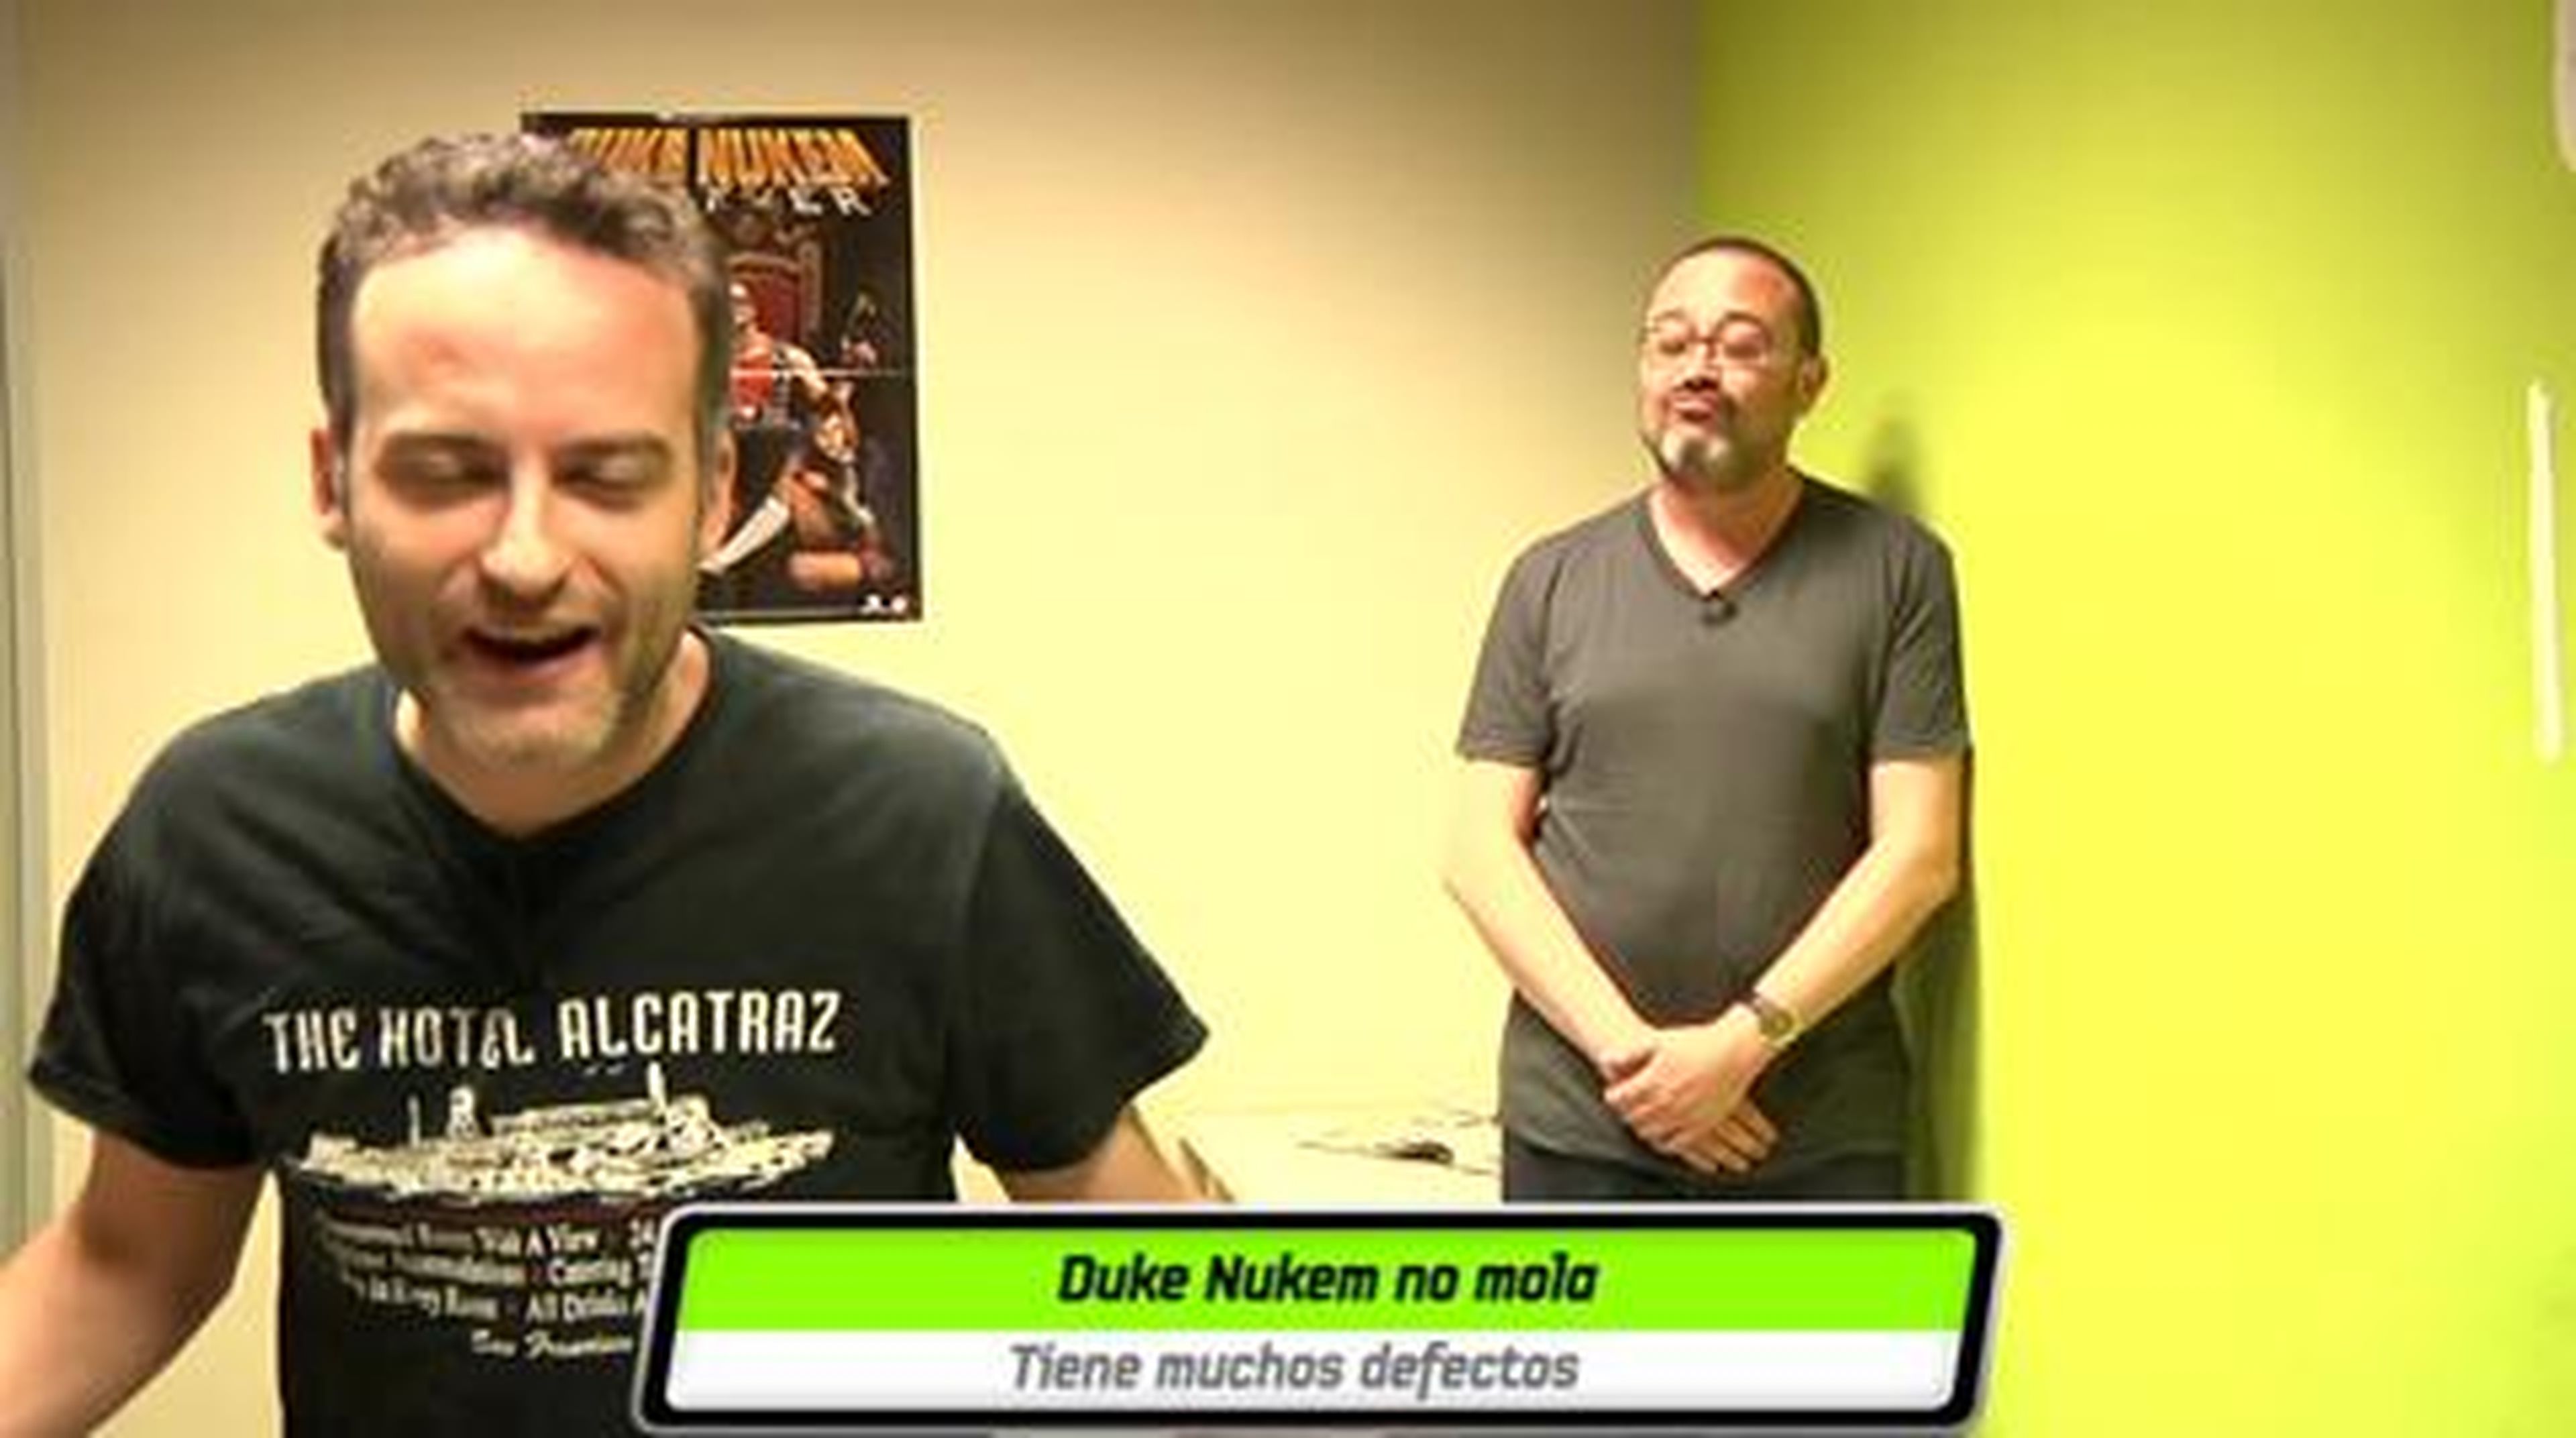 Cara a cara: Duke Nukem Forever mola o no mola en HobbyNews.es